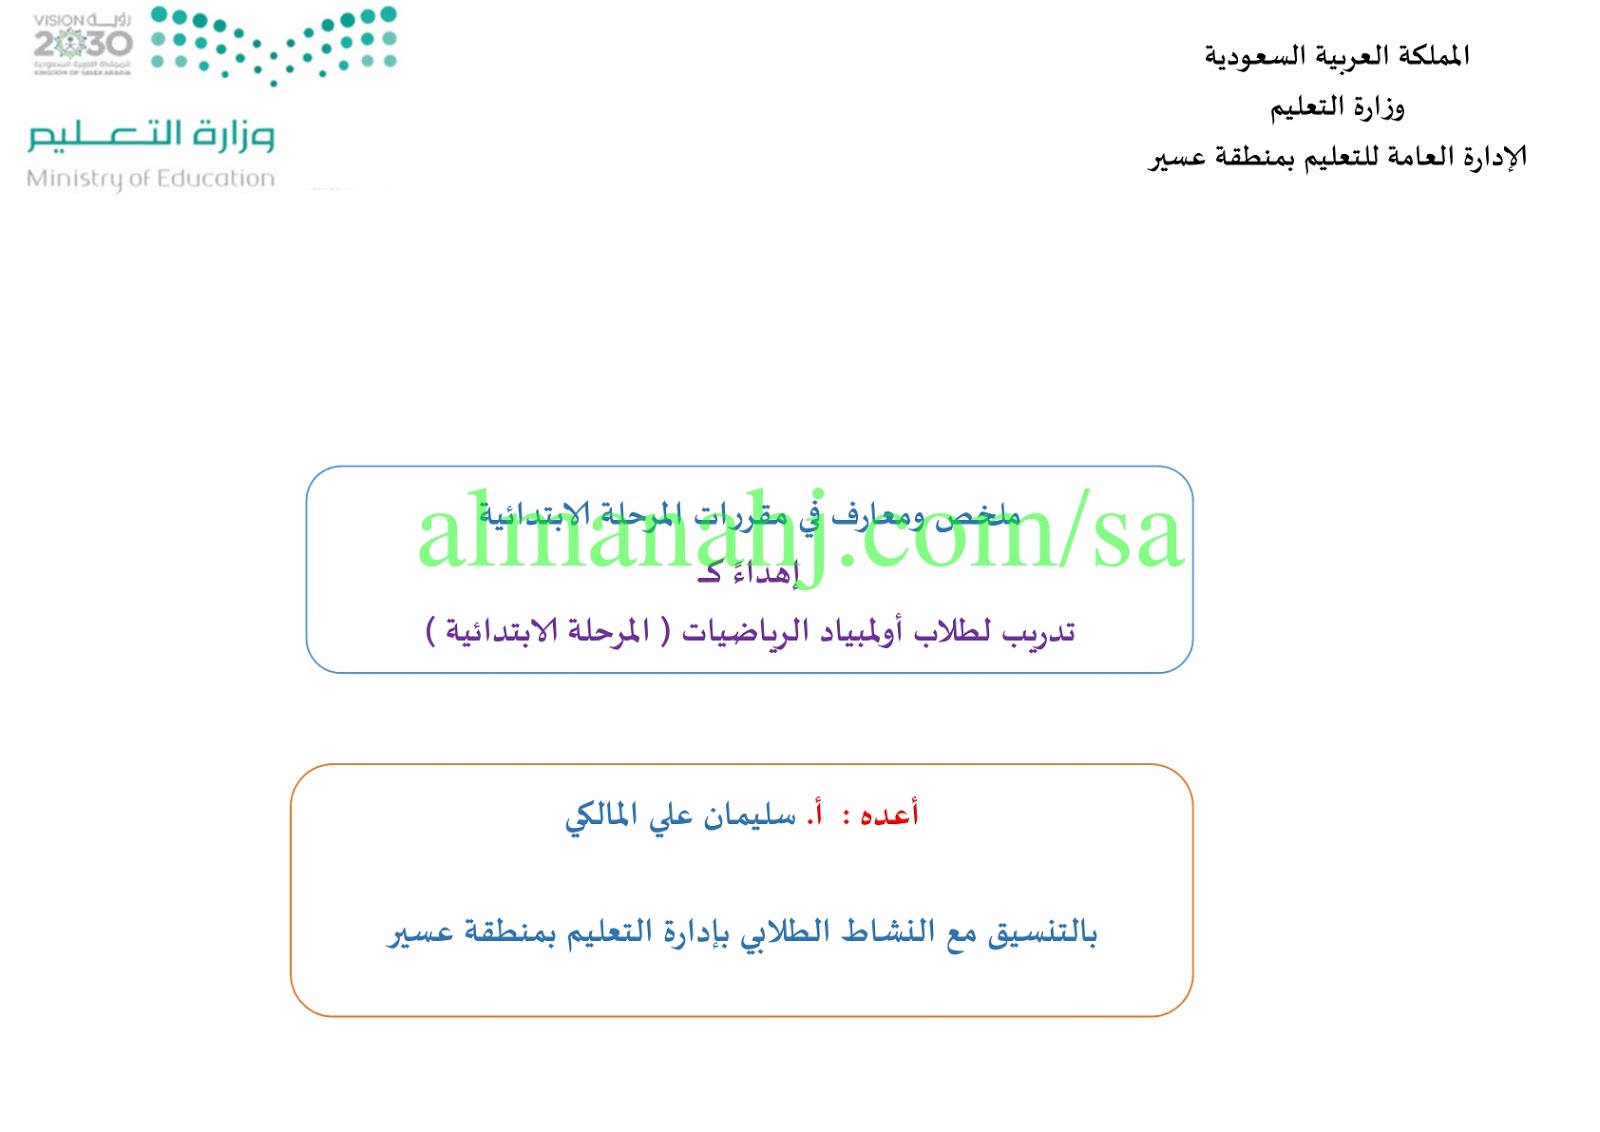 ملخص و معارف في مقررات المرحلة الابتدائية مرحلة ابتدائية رياضيات الفصل الثاني المناهج السعودية